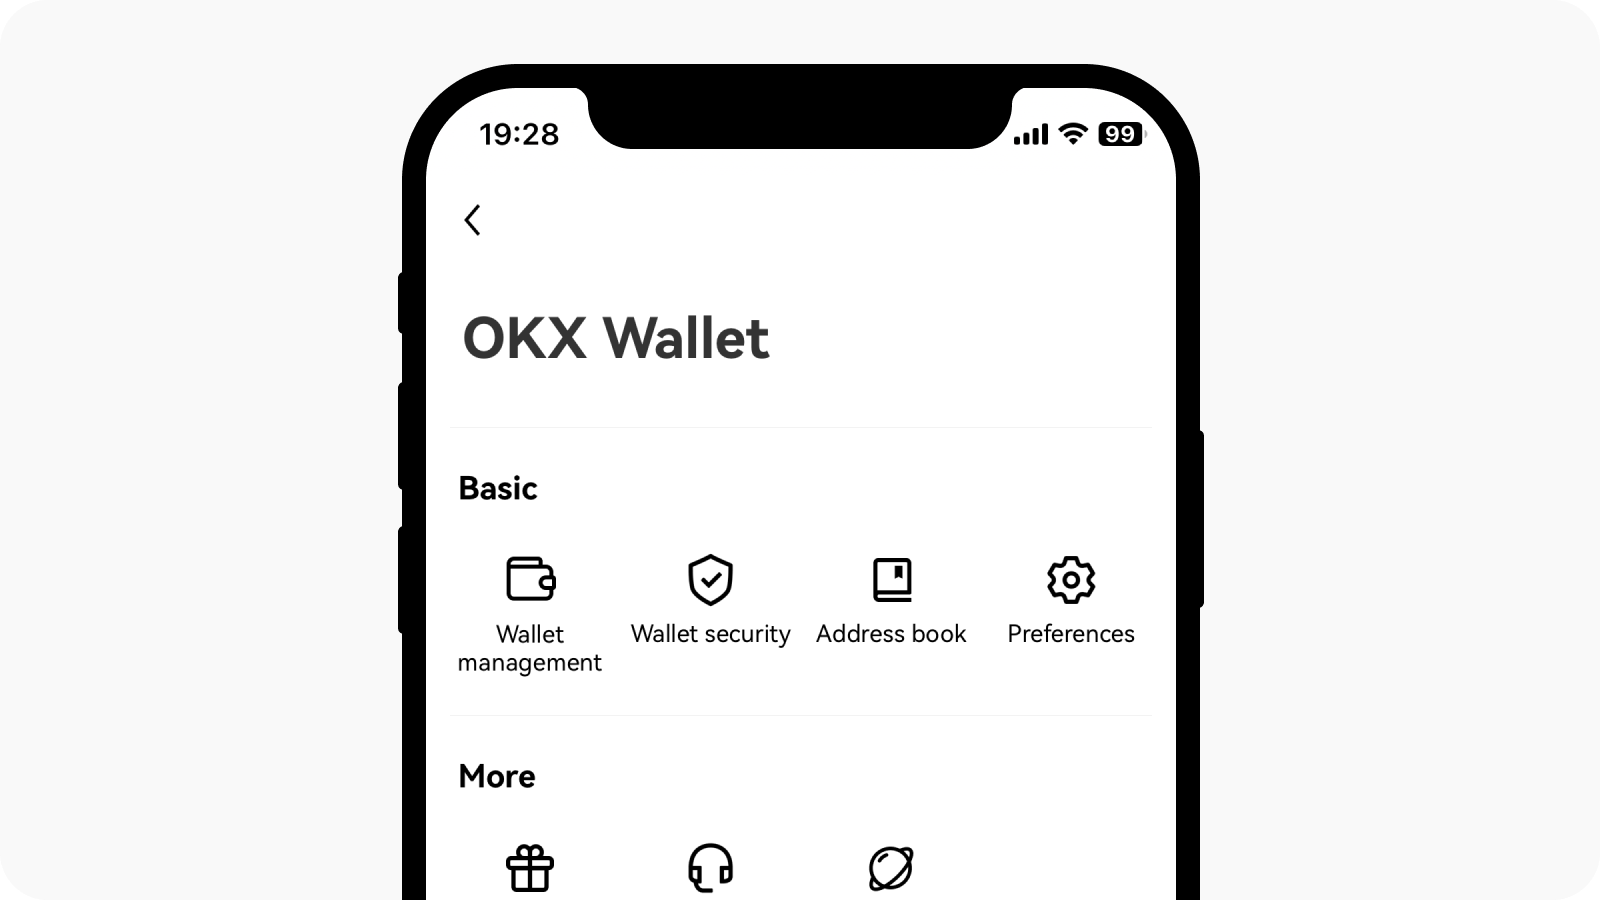 Selecione o centro do utilizador no canto superior esquerdo e encontre a gestão de carteiras na carteira OKX